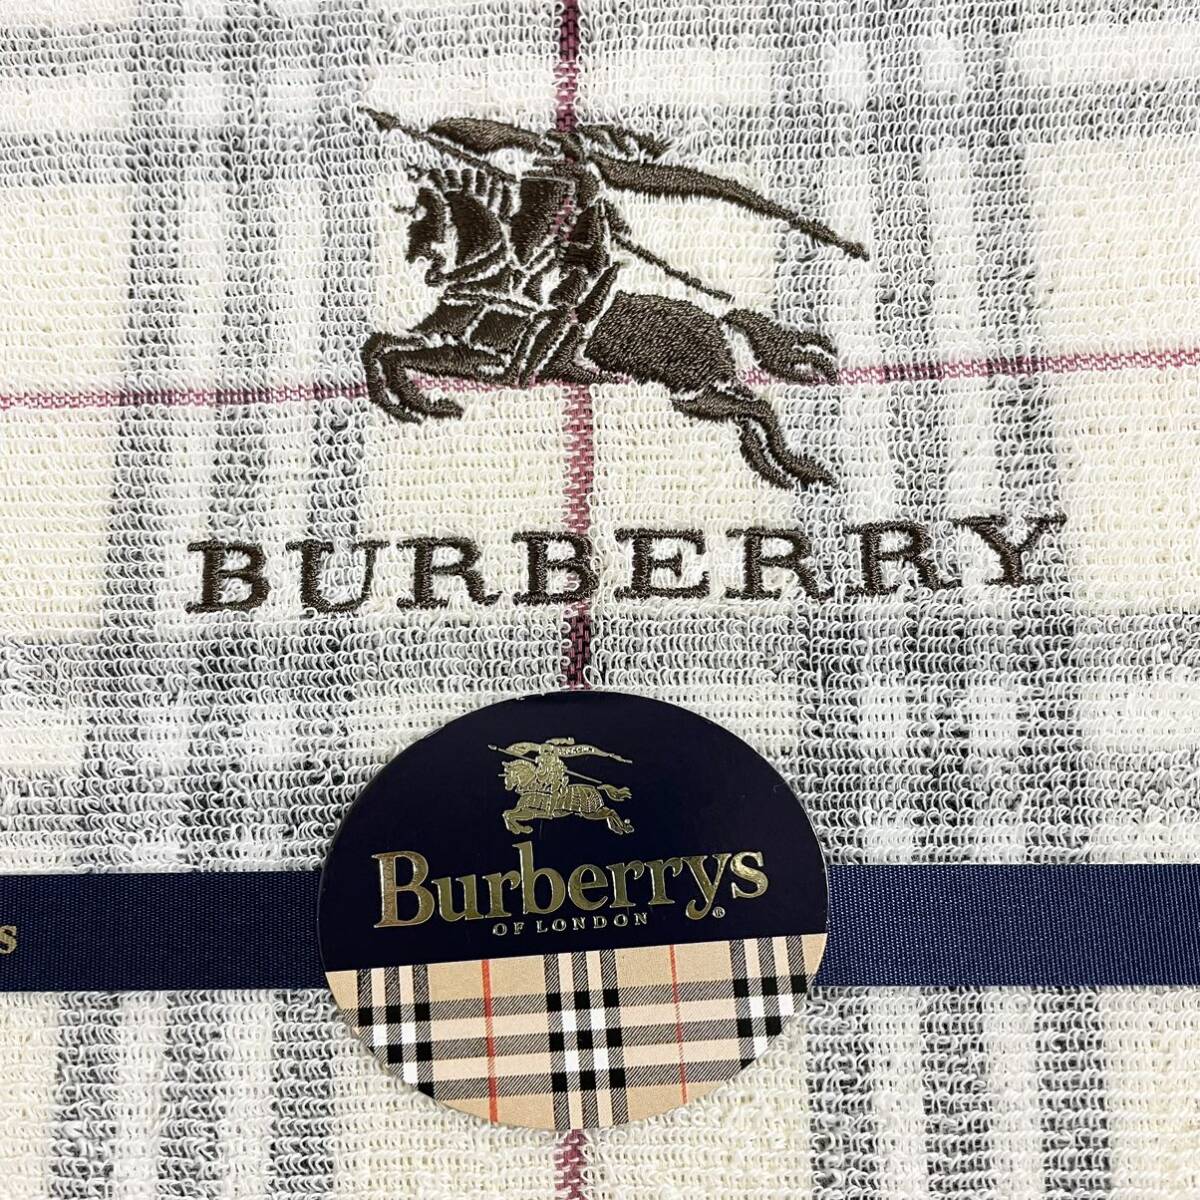  быстрое решение *BURBERRY LONDON Burberry Logo полотенце простыня noba проверка запад река промышленность не использовался новый товар хранение товар хлопок 100%